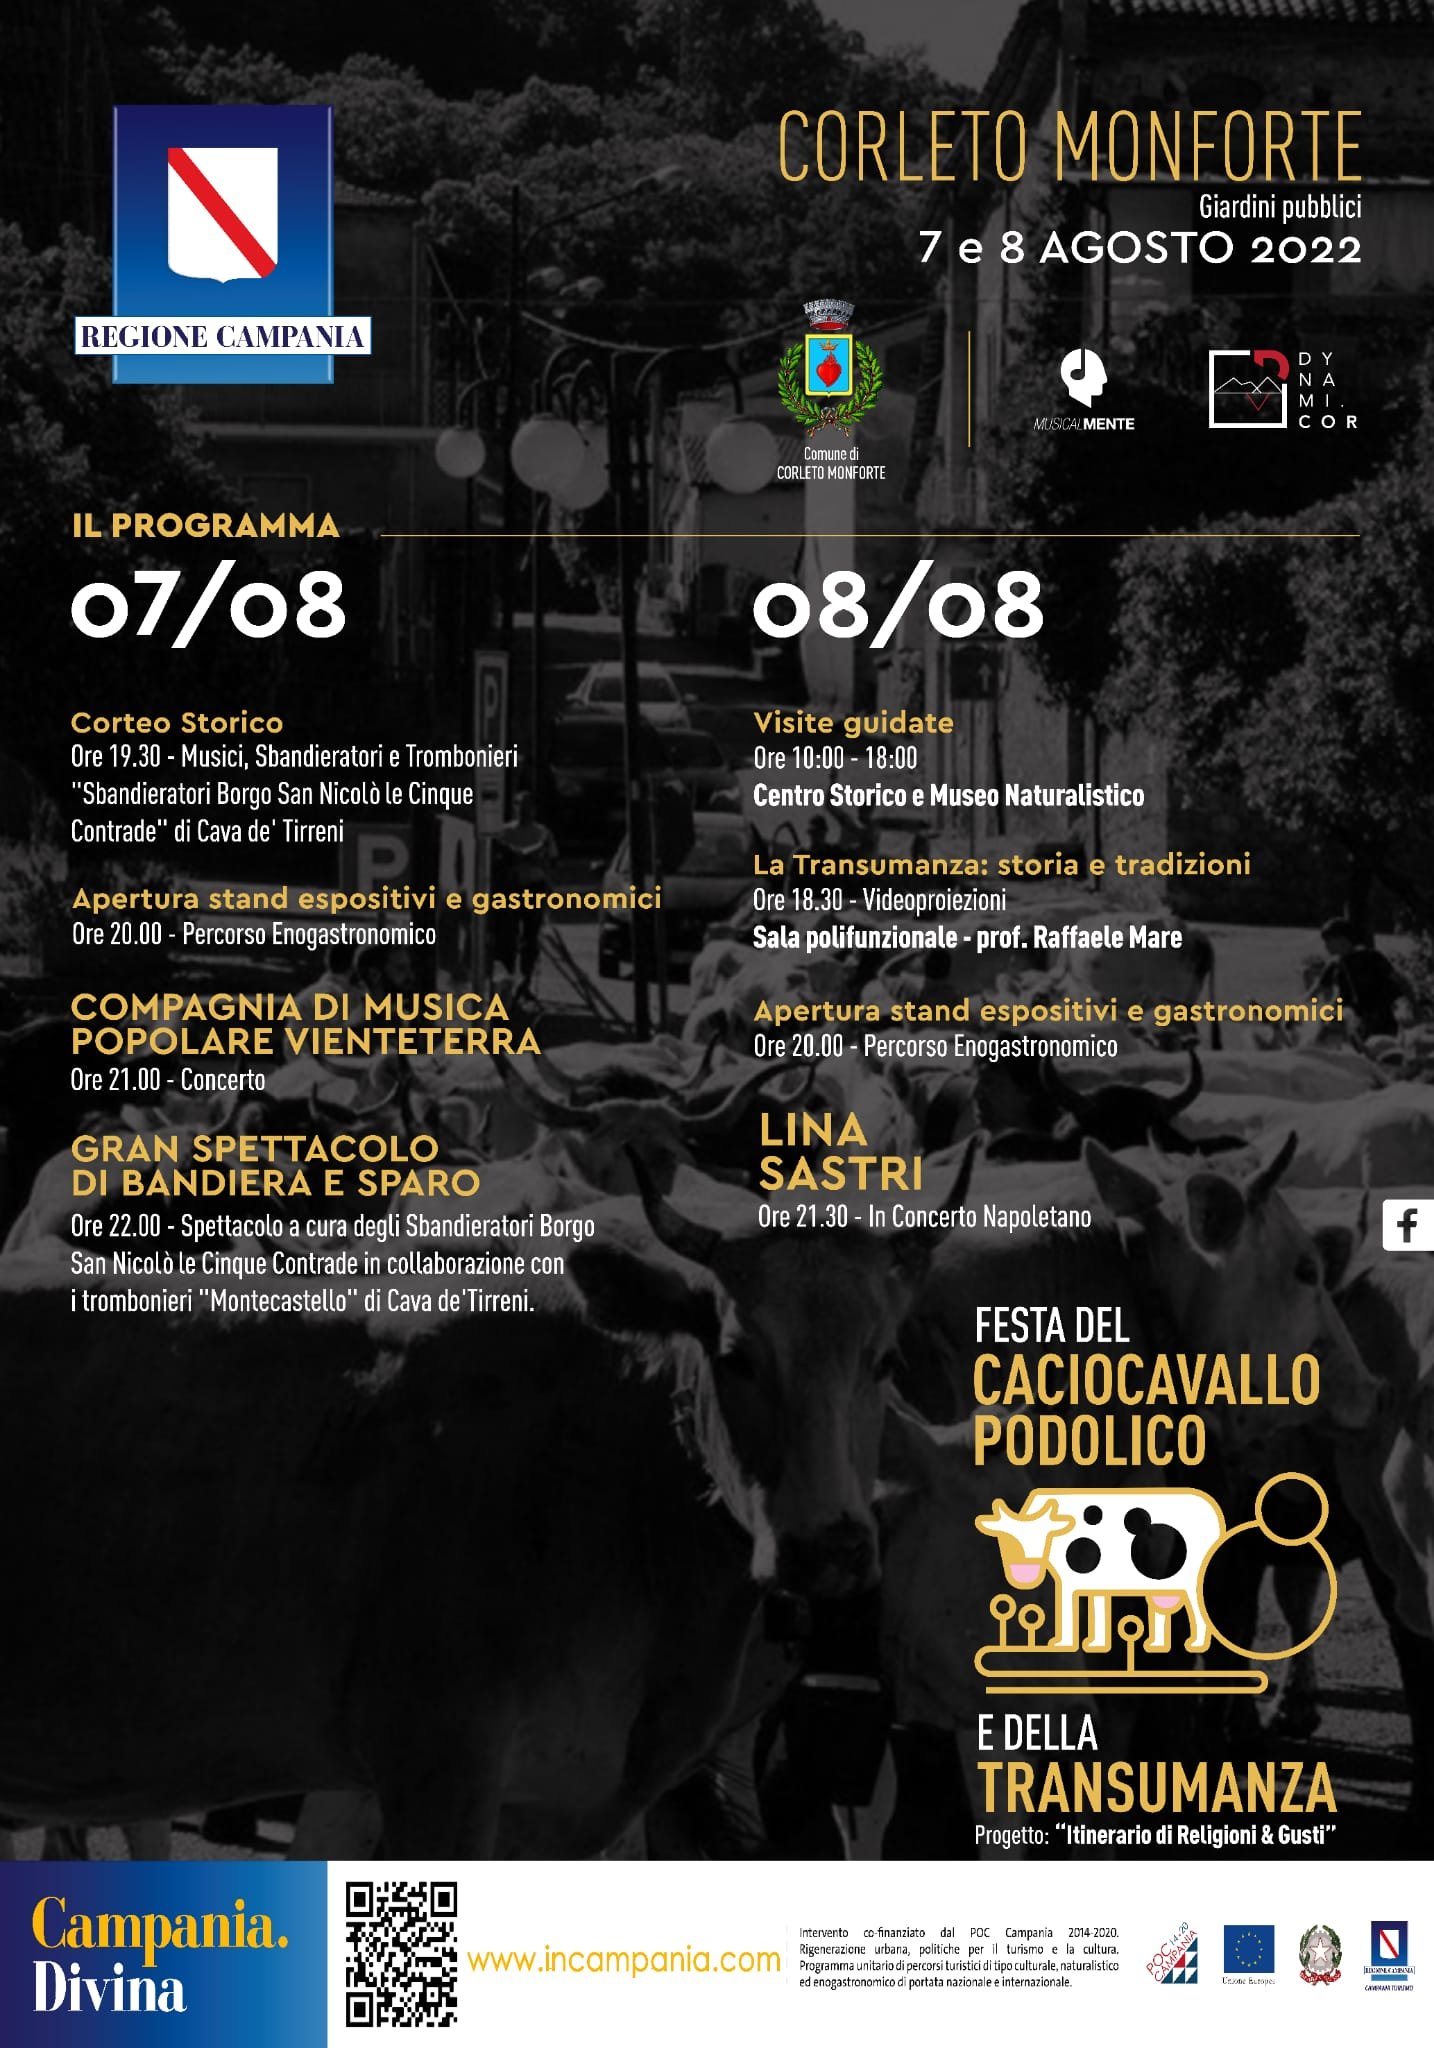 Festa-del-Caciocavallo-Podolico-e-della-Transumanza-2022-Corleto-Monforte-Cilento-programma